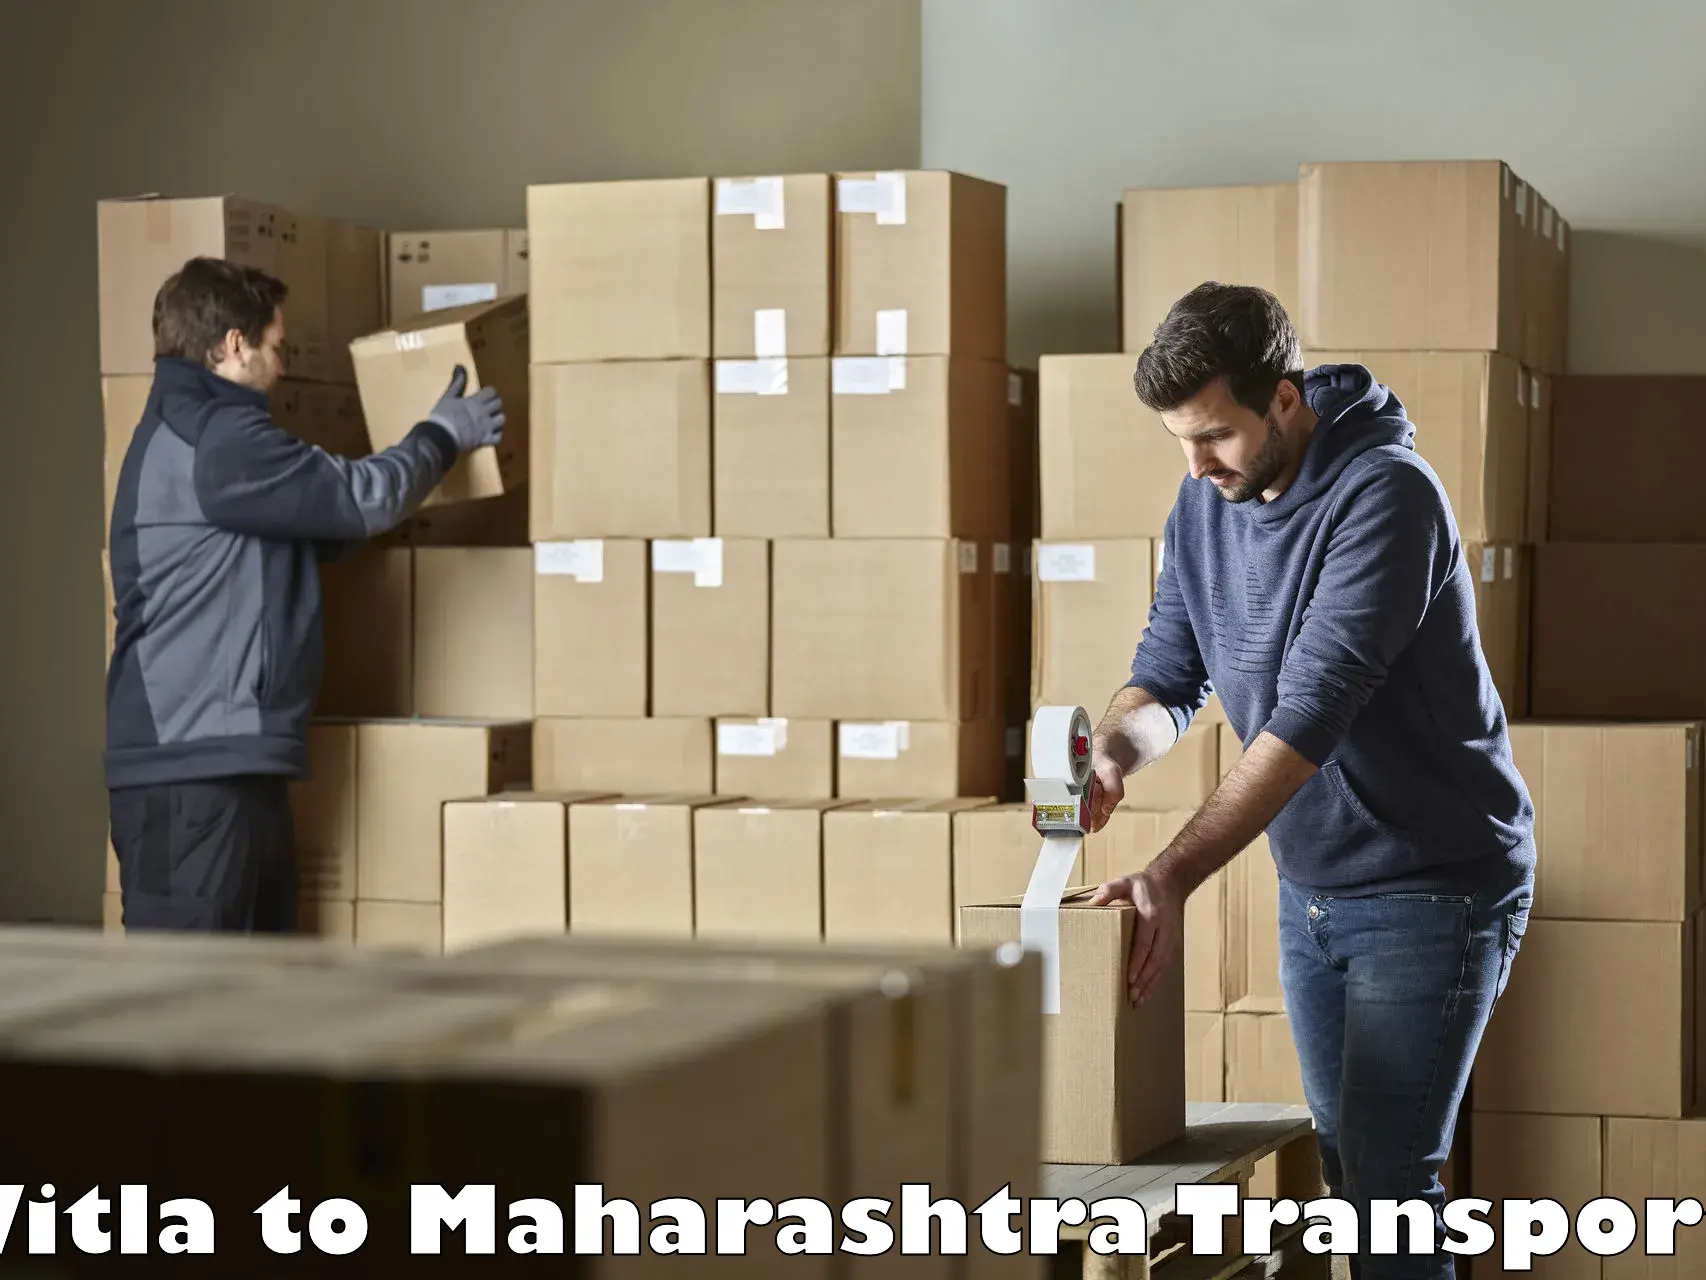 Inland transportation services Vitla to Maharashtra